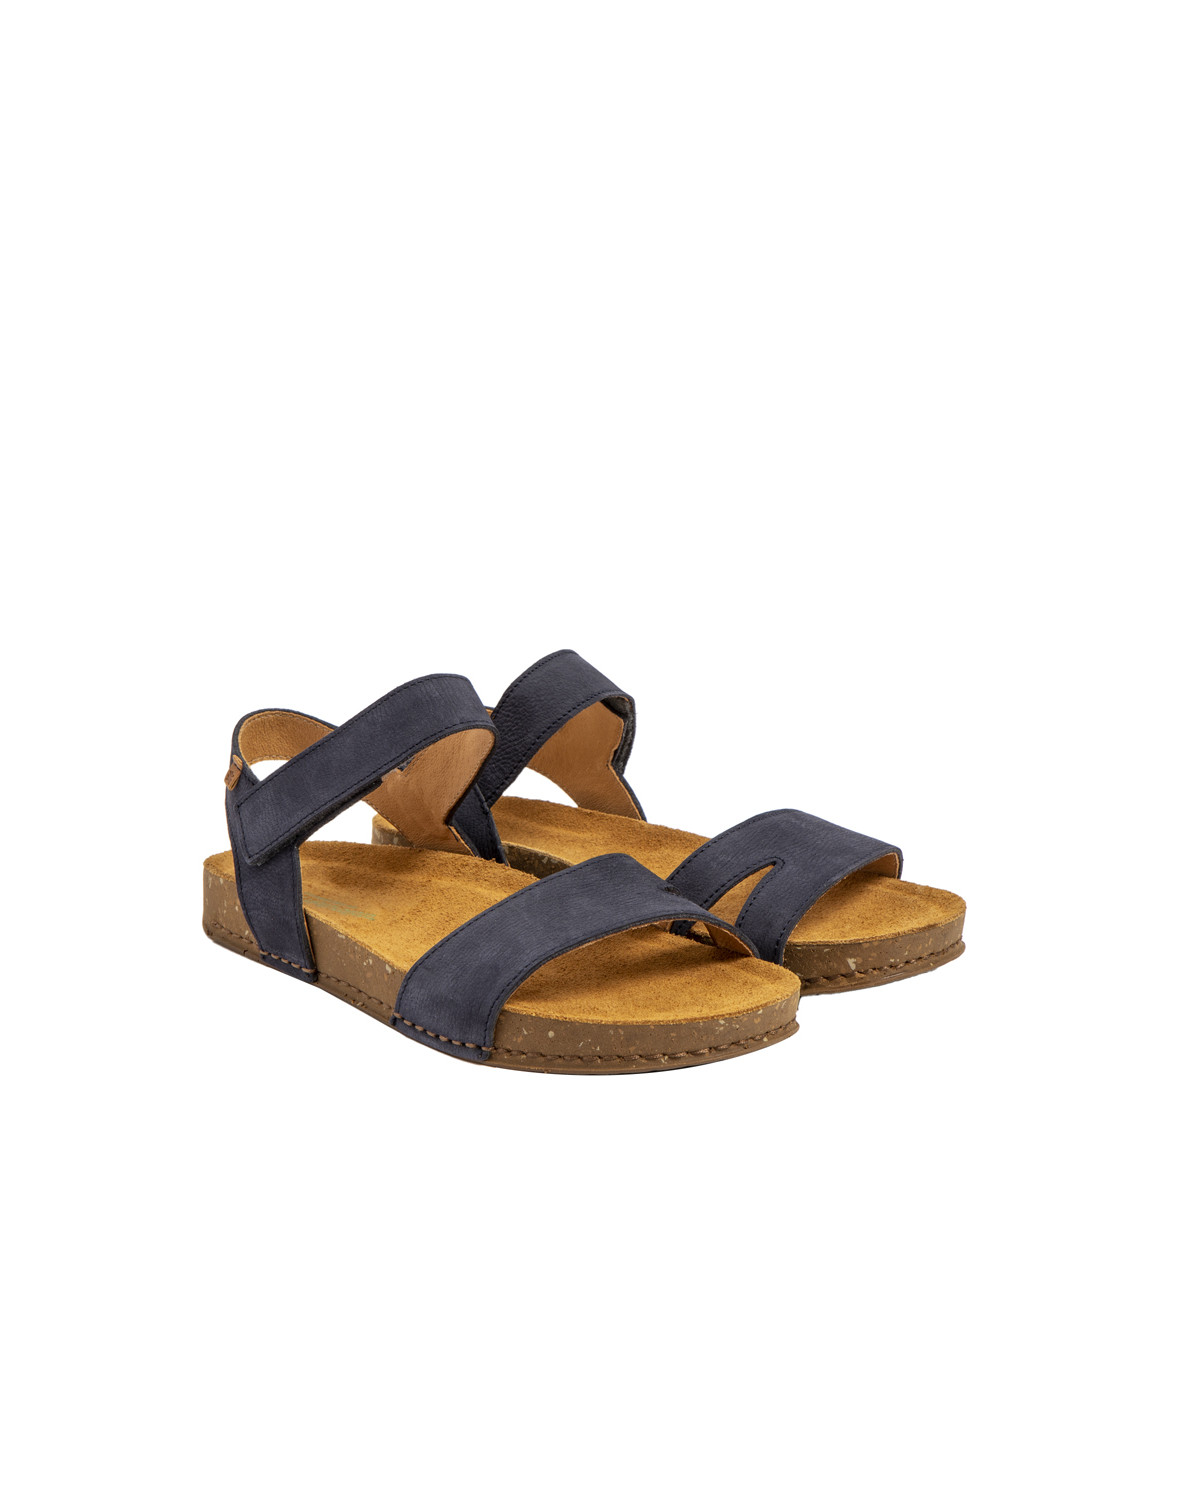 Sandales confortables plates en cuir ultra confort - Bleu - El naturalista